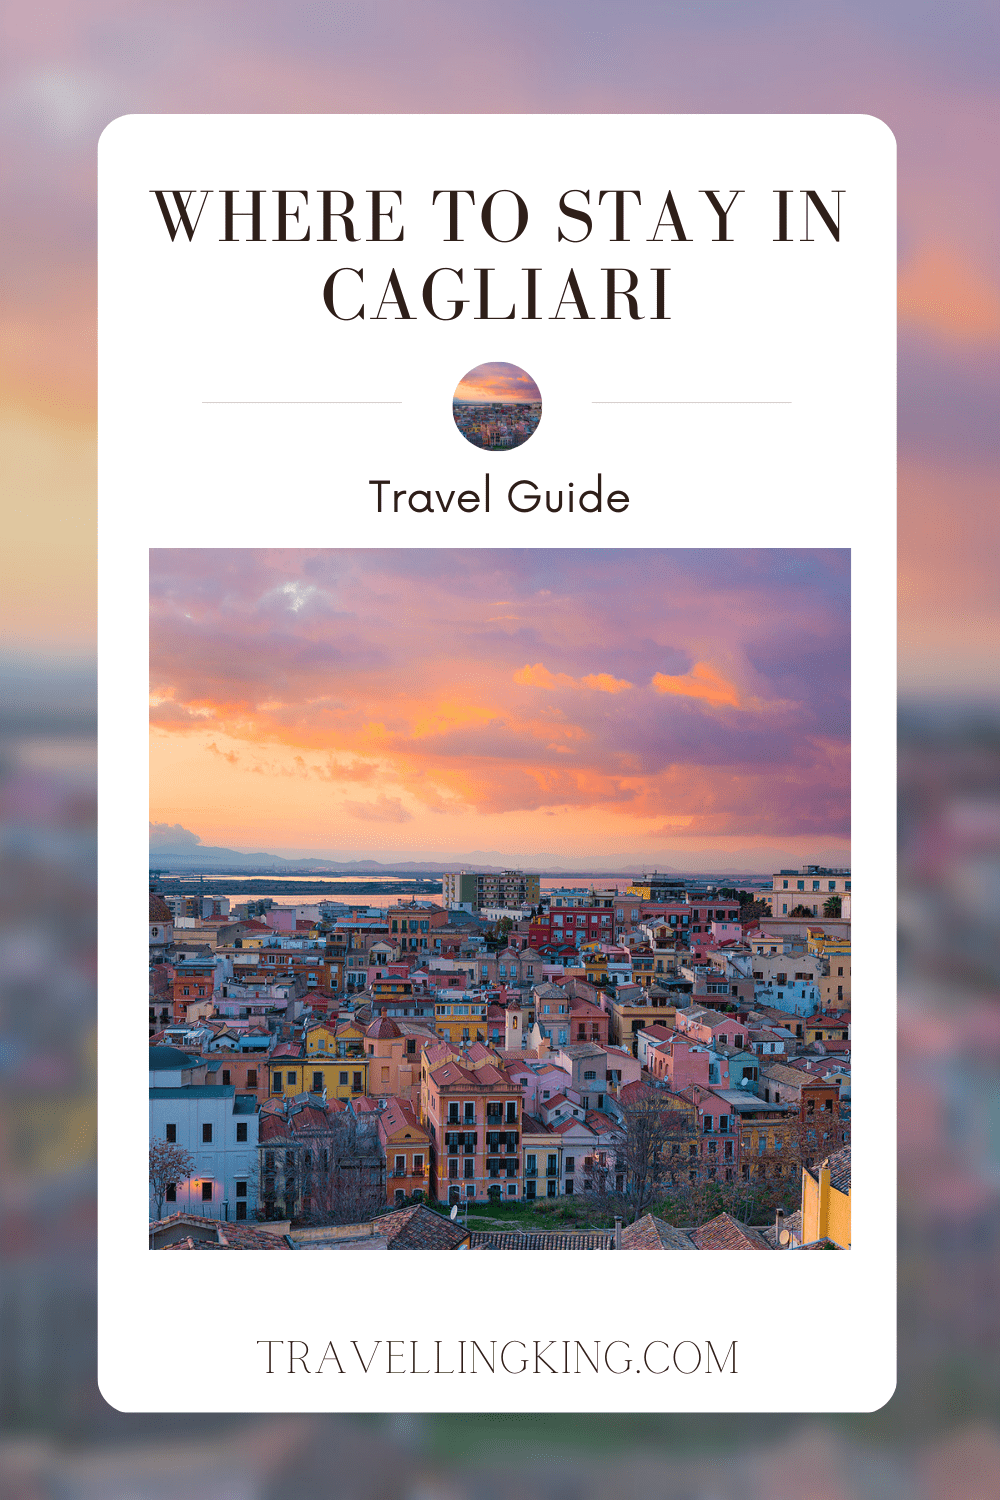 Where to Stay in Cagliari